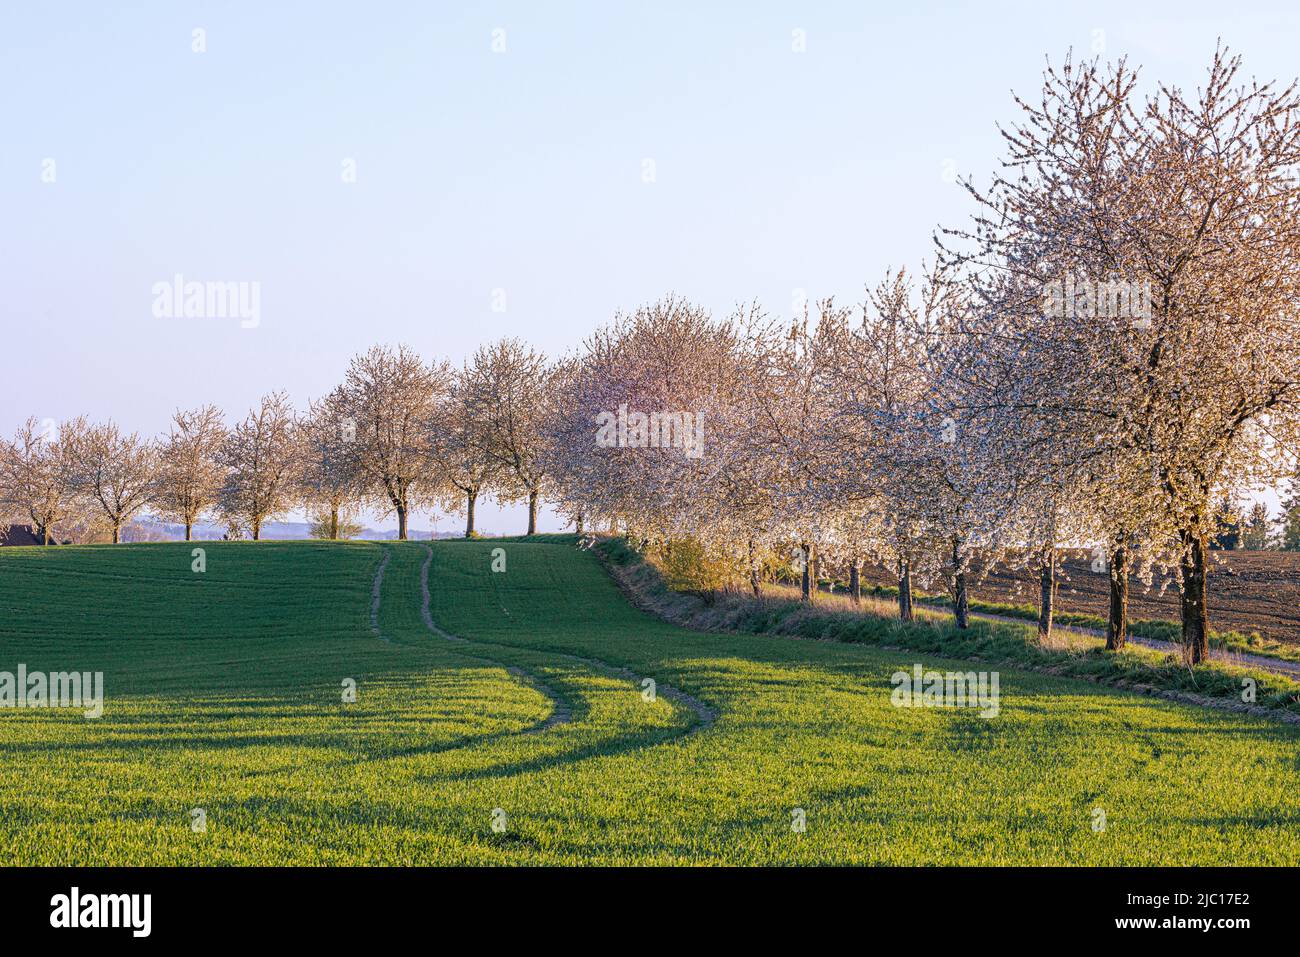 Cerisier, cerisier doux (Prunus avium), allée de cerisier en fleur en contre-jour, Allemagne, Bavière, Gruenbach Banque D'Images